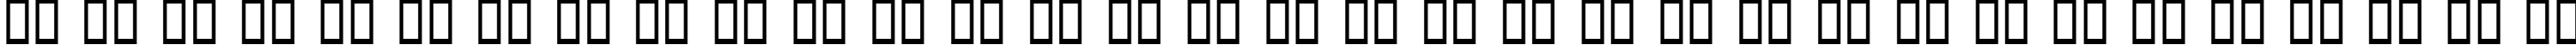 Пример написания русского алфавита шрифтом Aunchanted